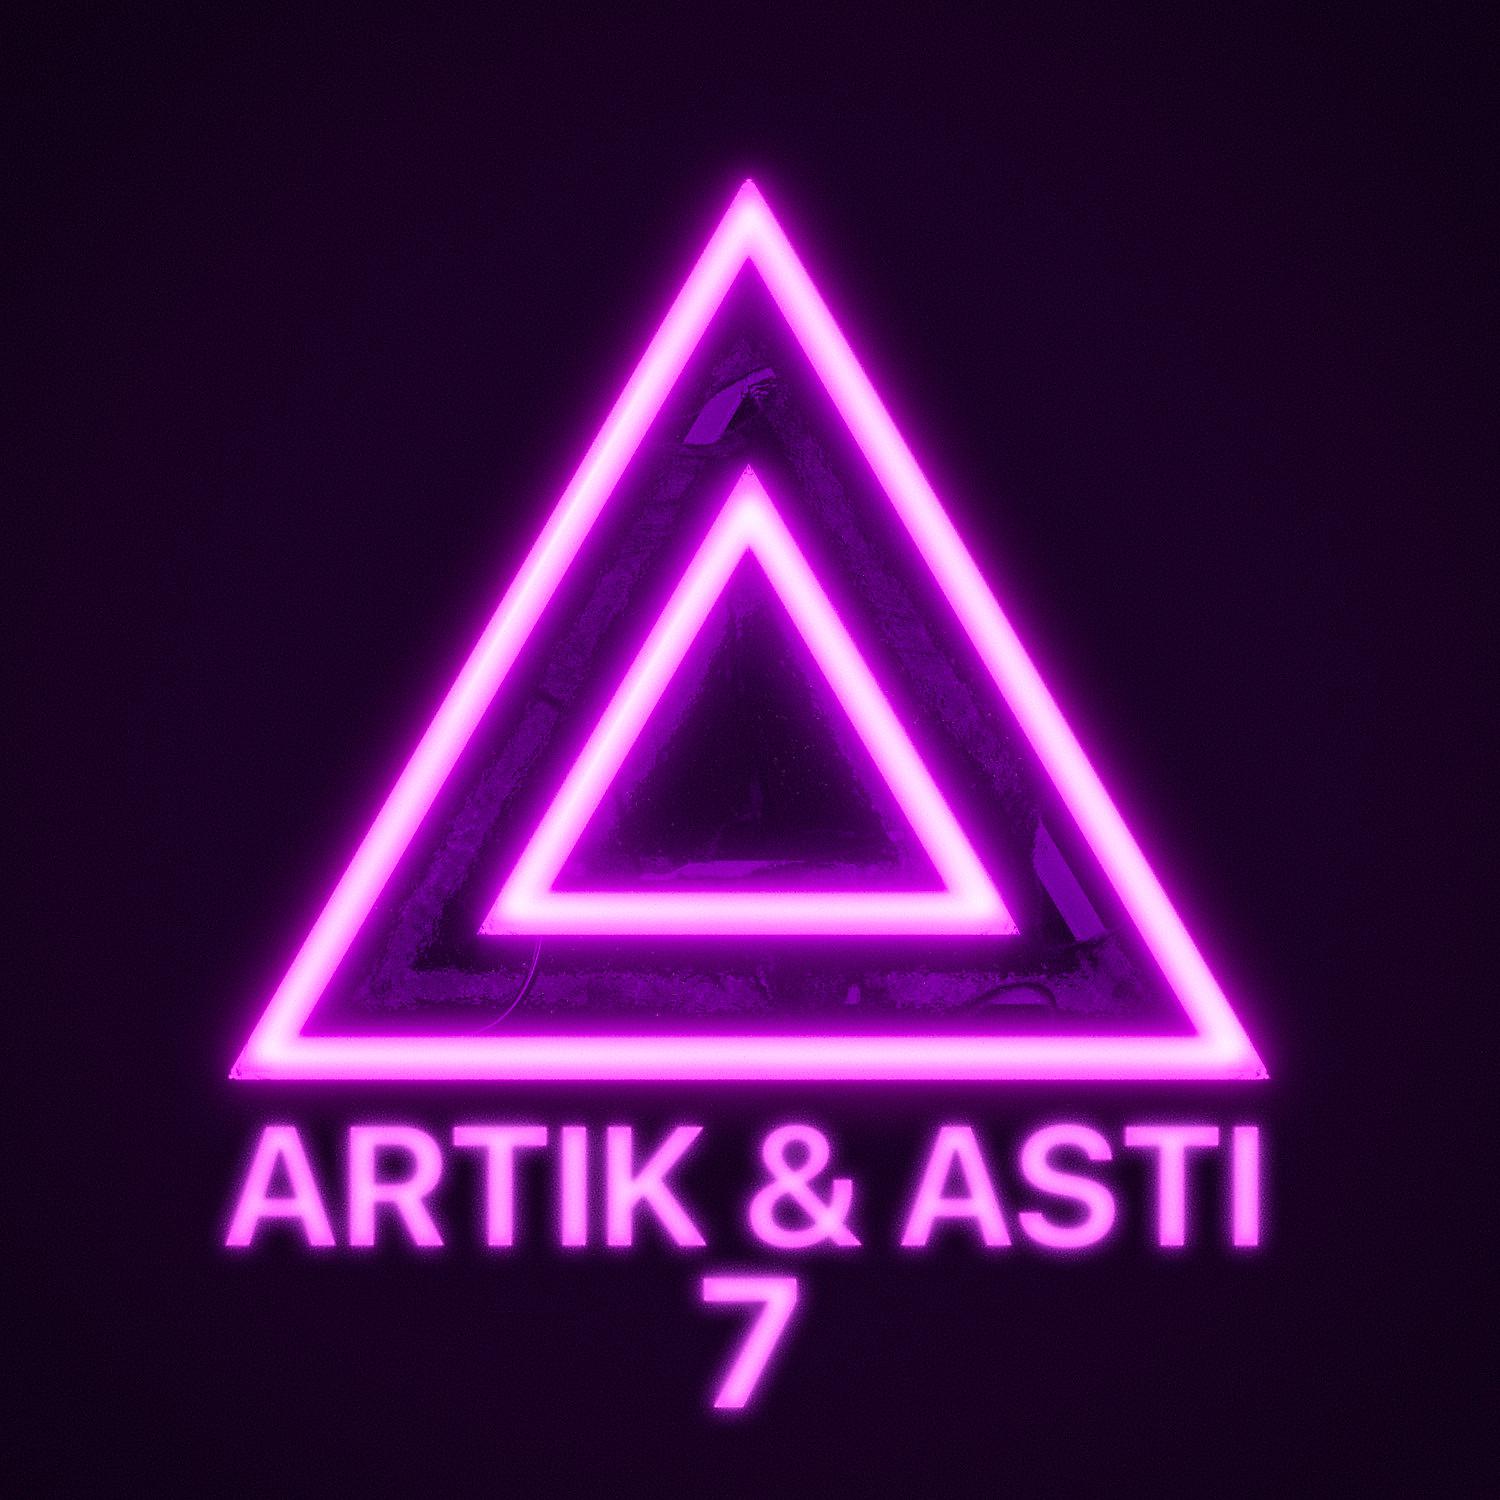 Артик не нужны текст. Артик и Асти альбом 7. Артик и Асти треугольник. Артик и Асти обложка треугольник. Артик и Асти логотип треугольник.